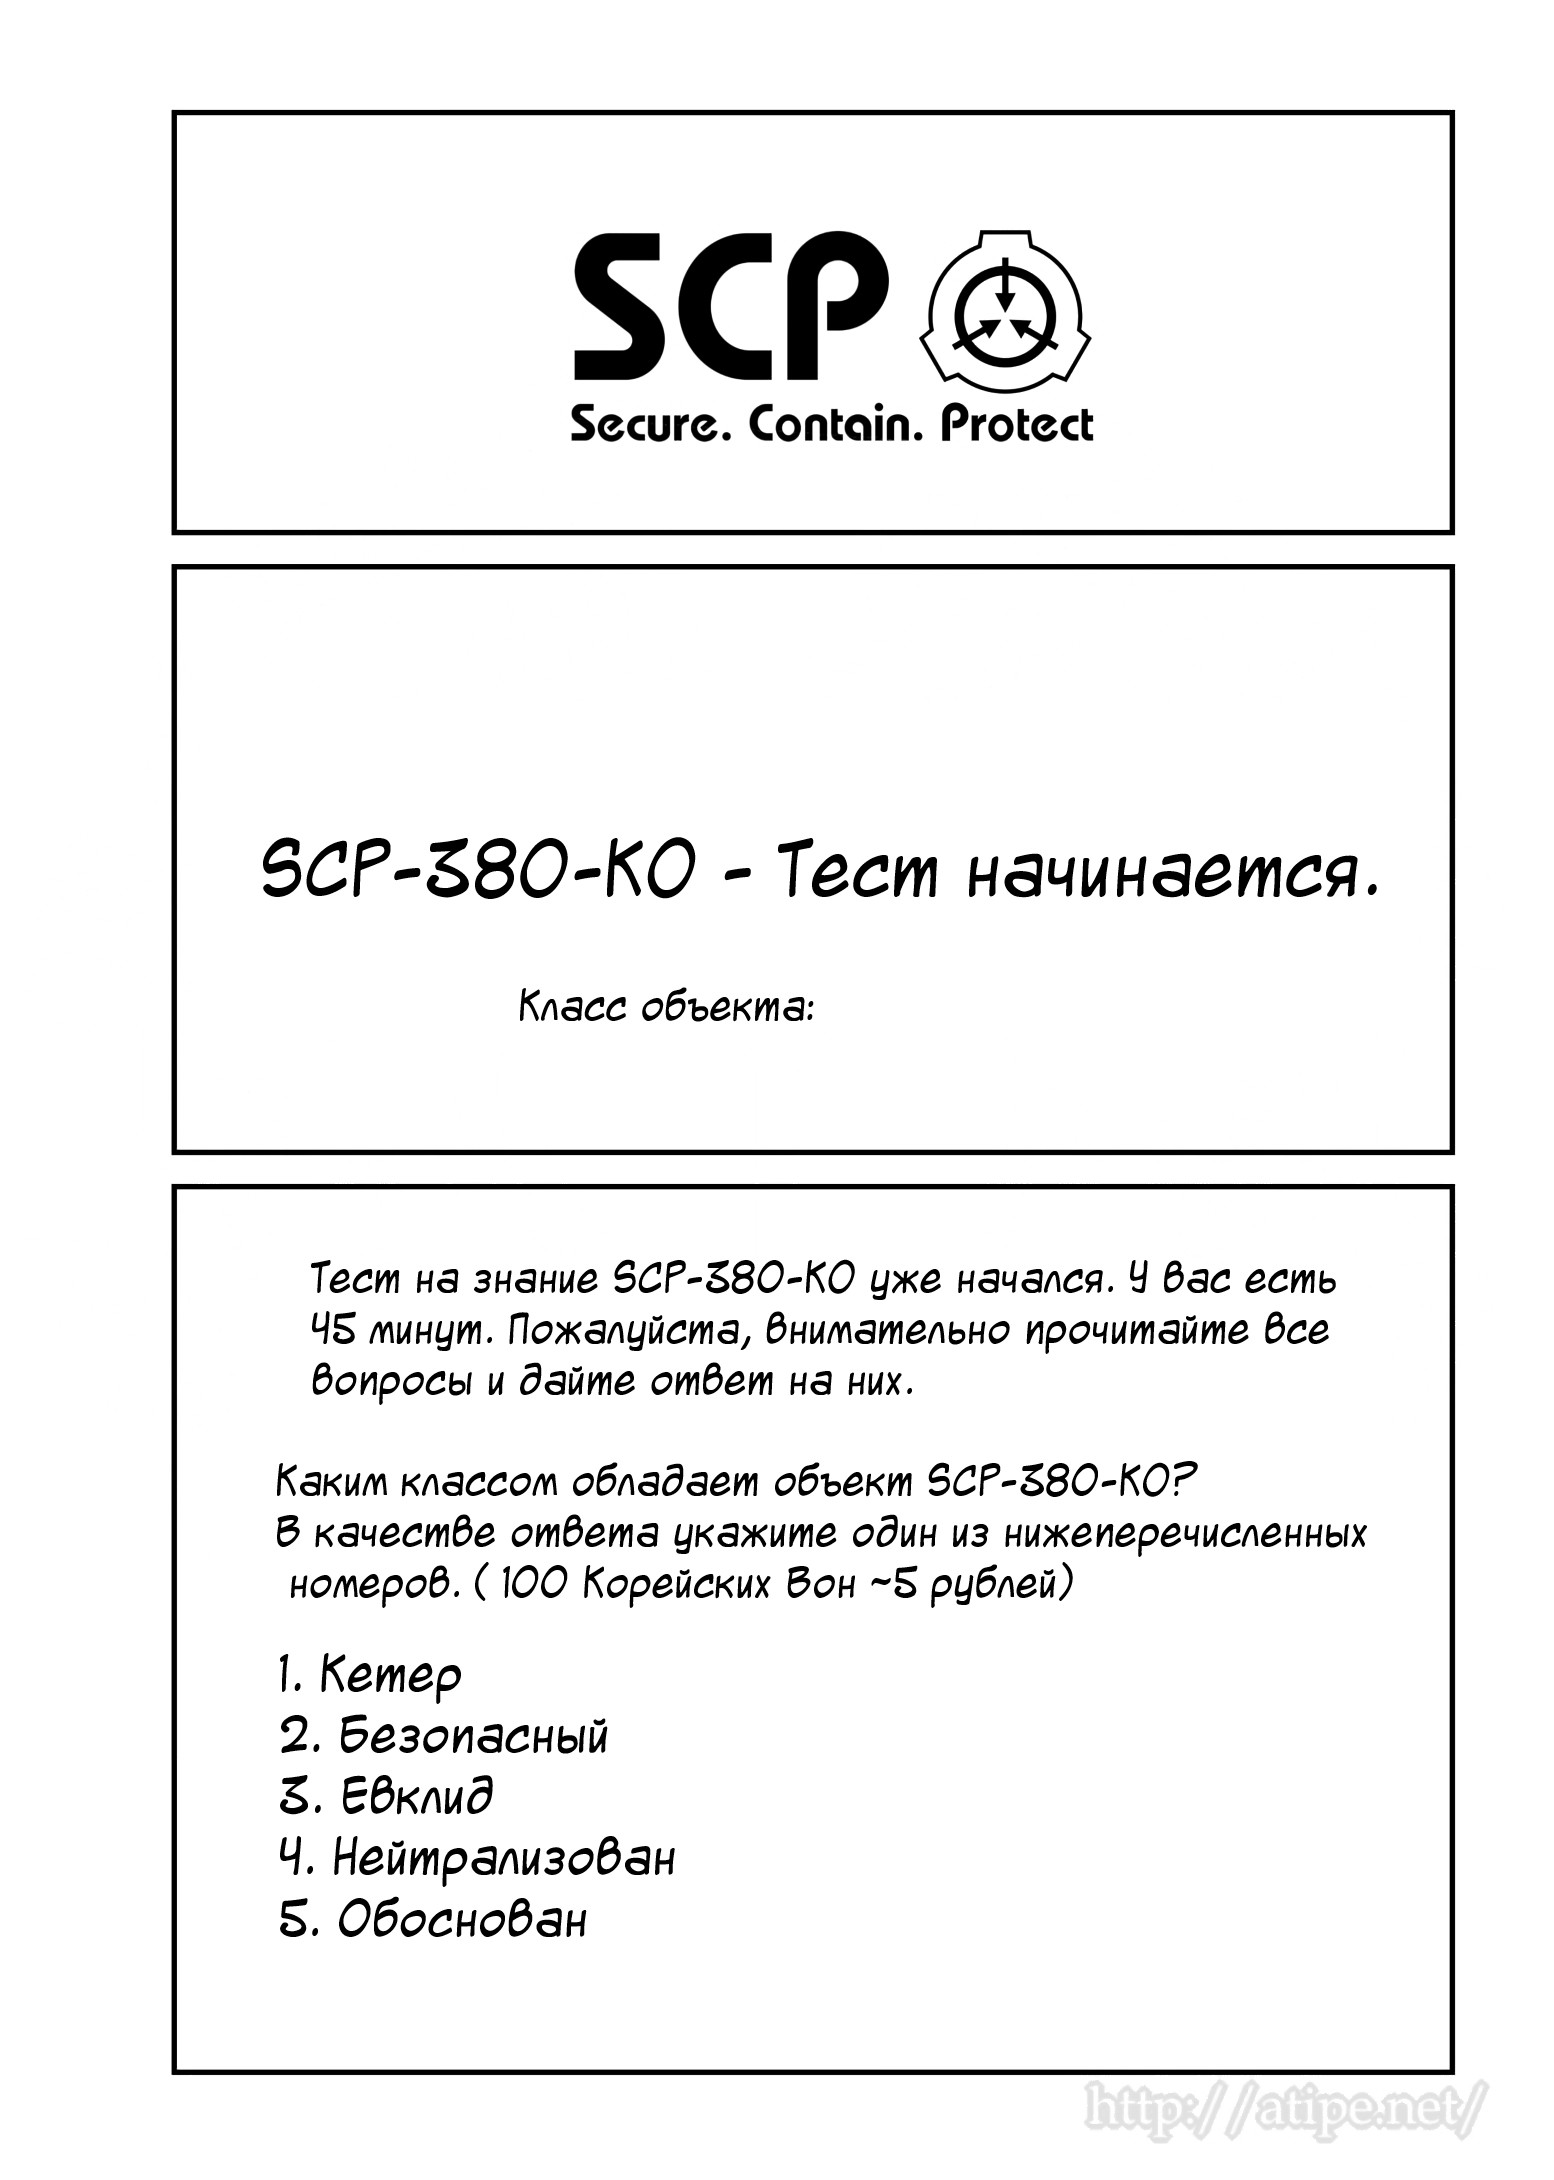 Упрощенный SCP 1 - 64 SCP-380-KO